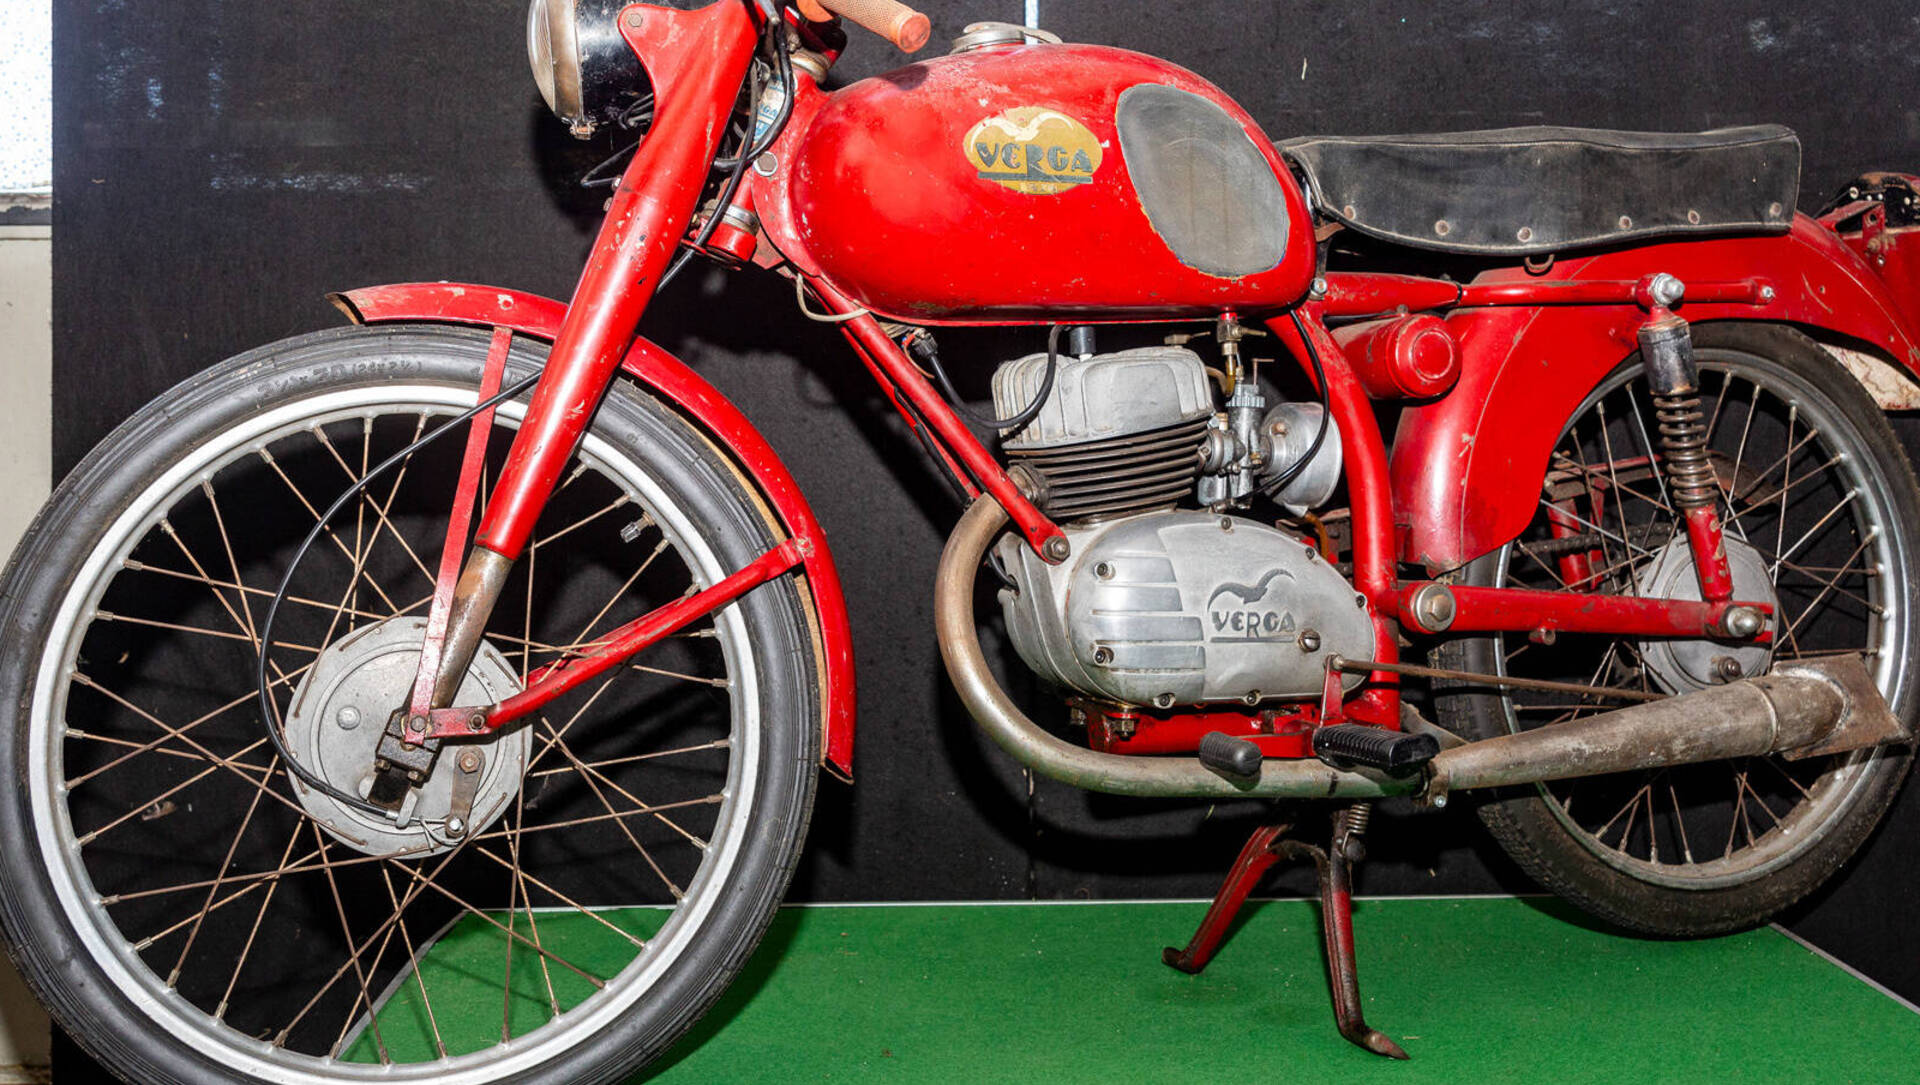 22 dic – A Saronno c’era anche un’azienda che produceva motociclette